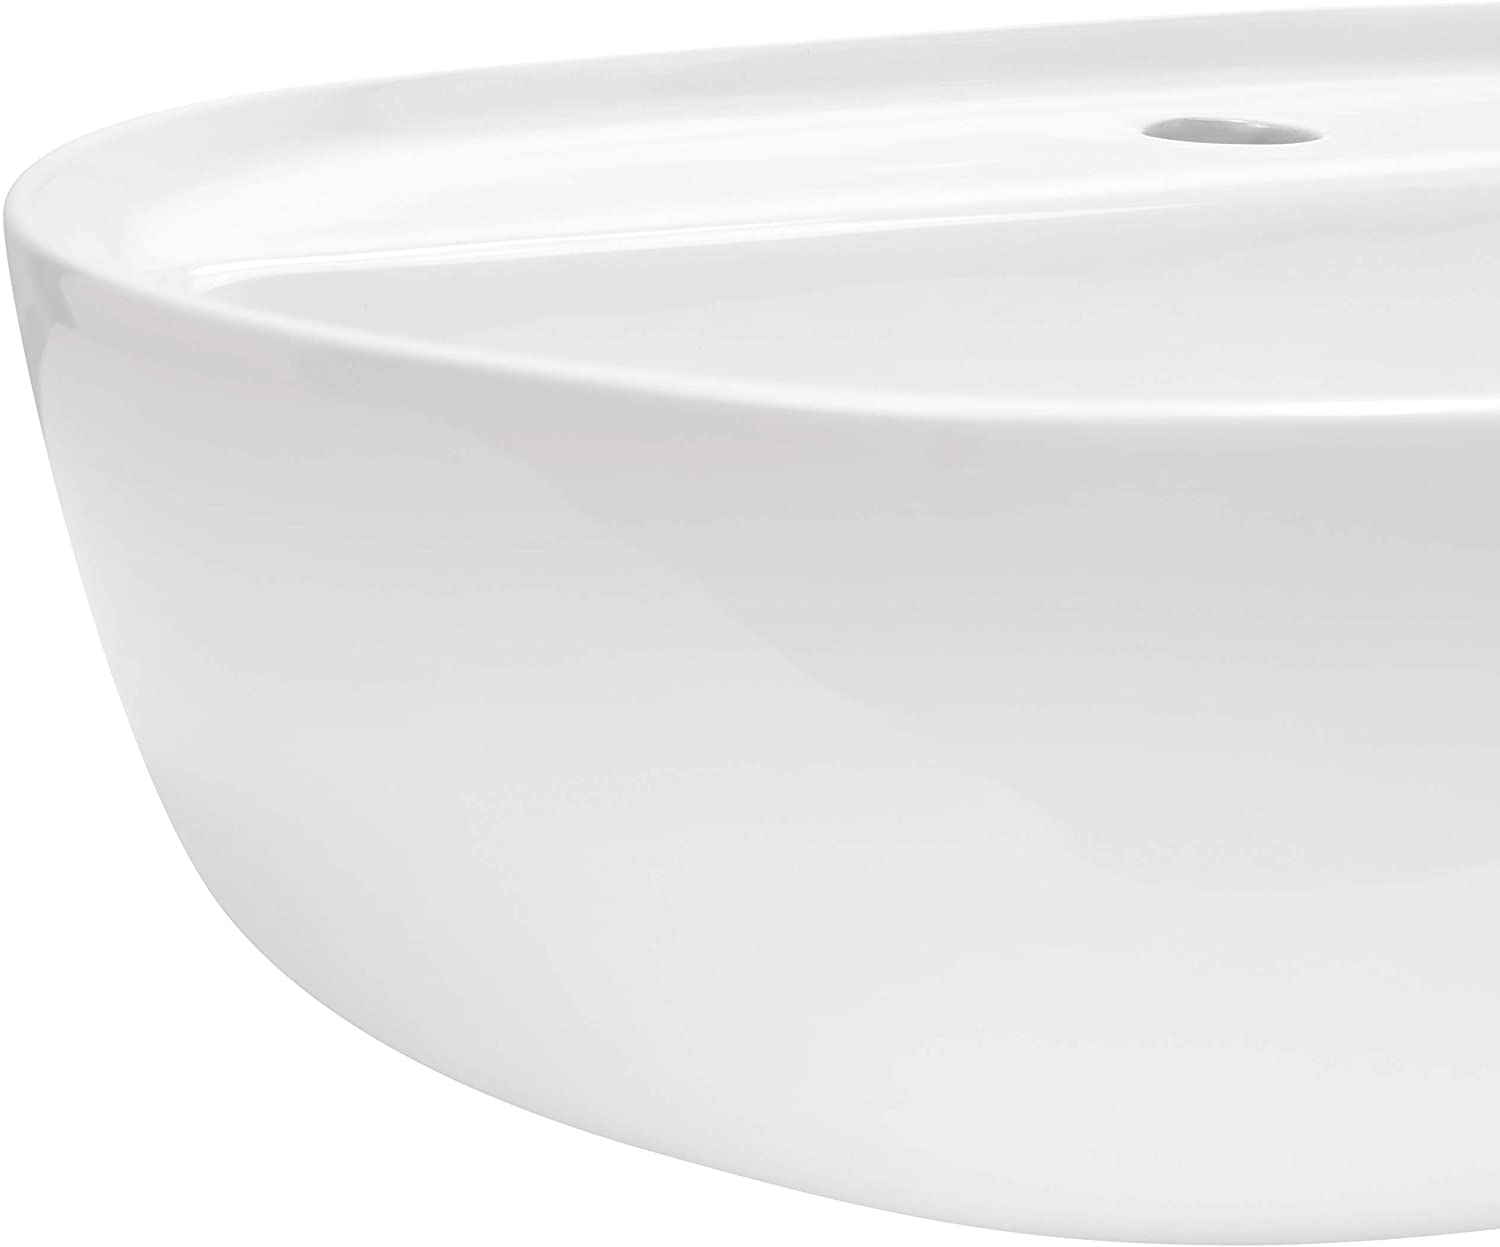 Design Waschbecken Alento Farbe Weiß - 3 Größen